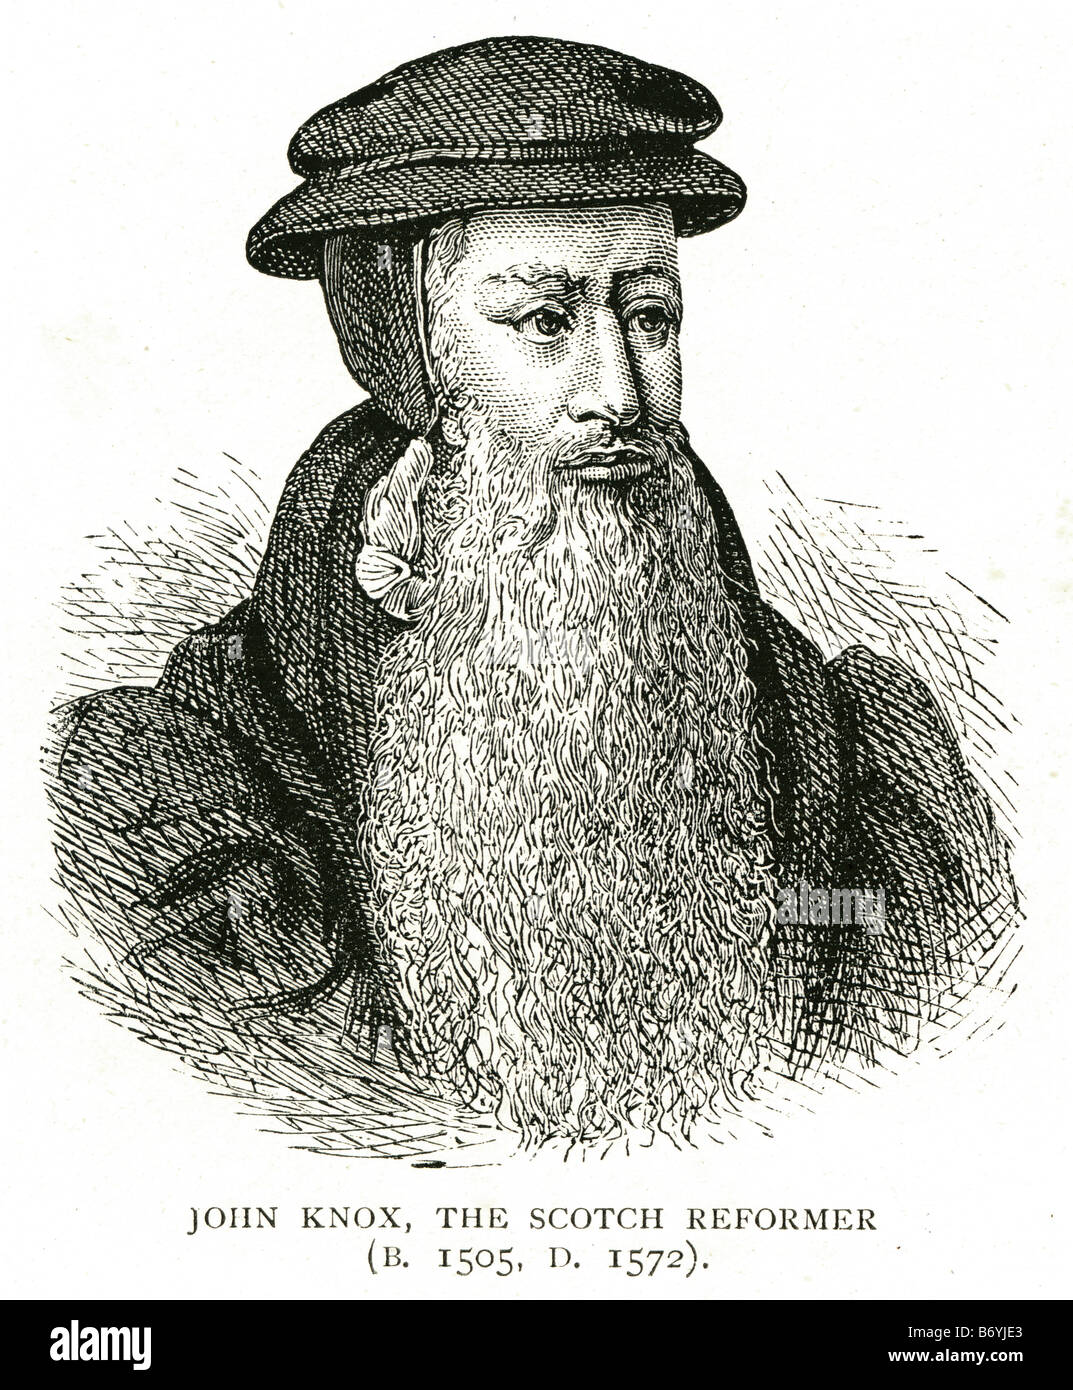 John Knox il reformer scotch 1505 1572 ecclesiastico scozzese Riforma Protestante presbiteriana di denominazione Foto Stock